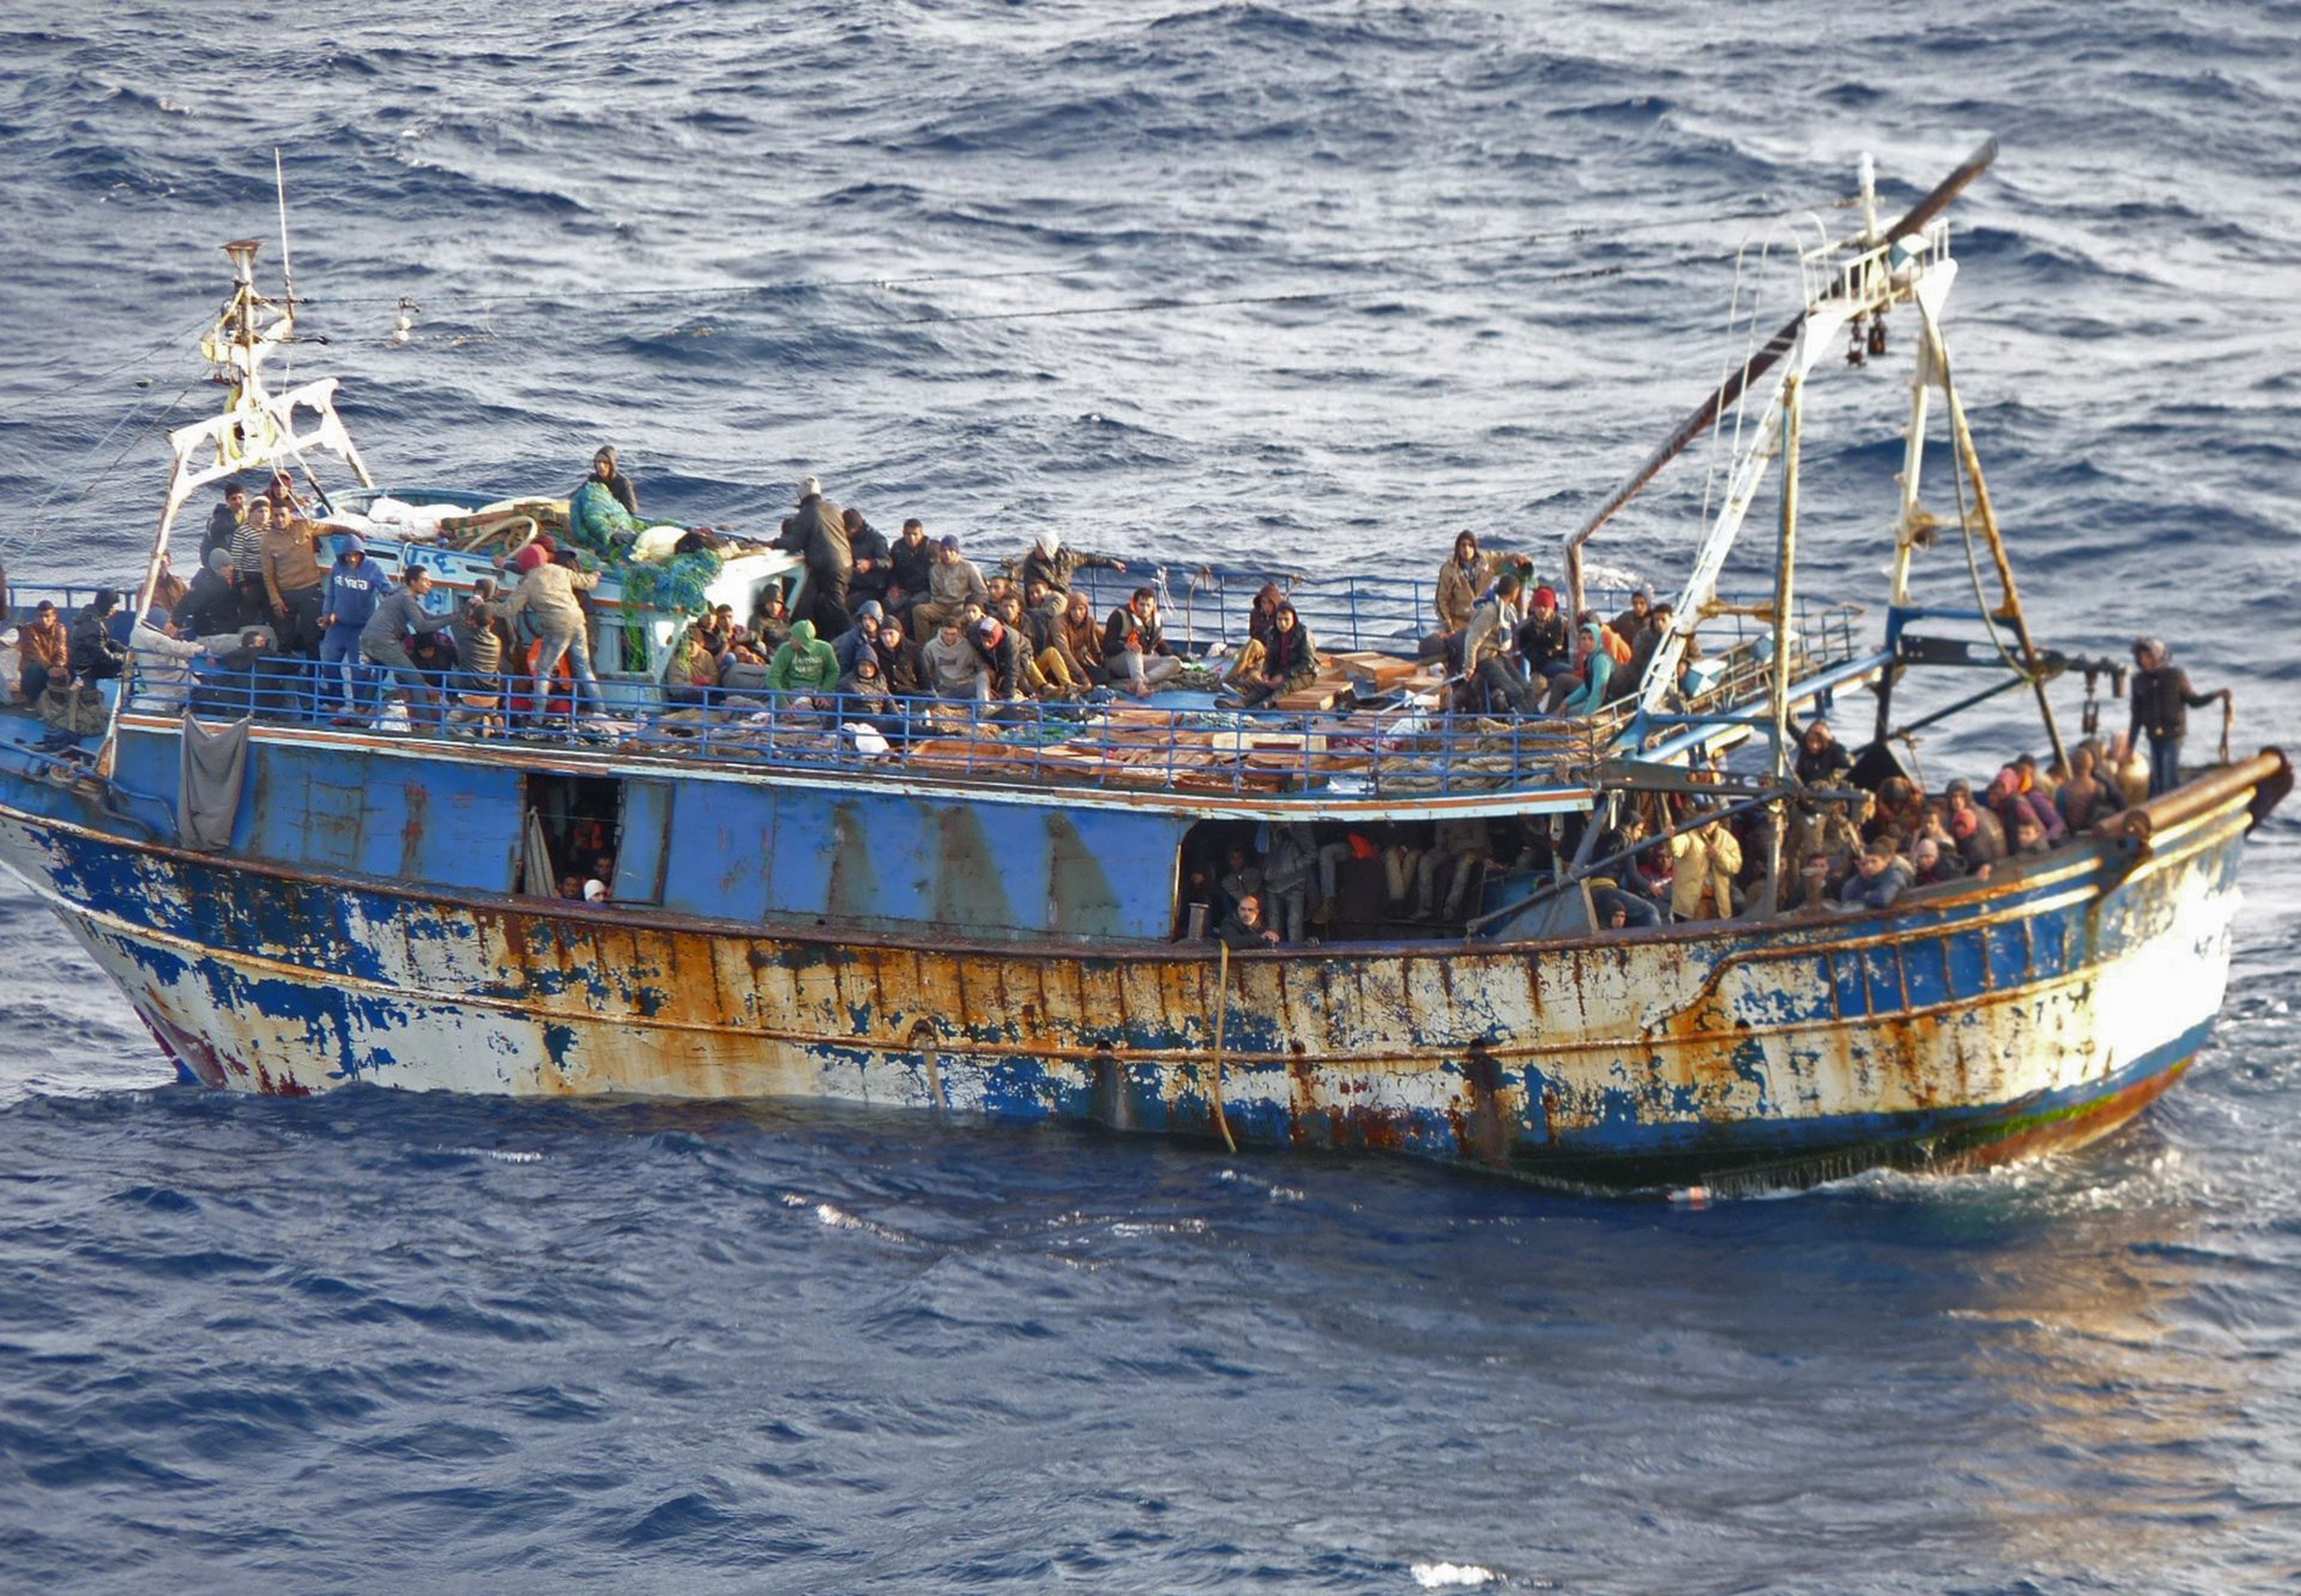 Προσφυγικό: Προσάραξη σκάφους με 92 άτομα στη Μάνη, συνελήφθησαν τρία άτομα